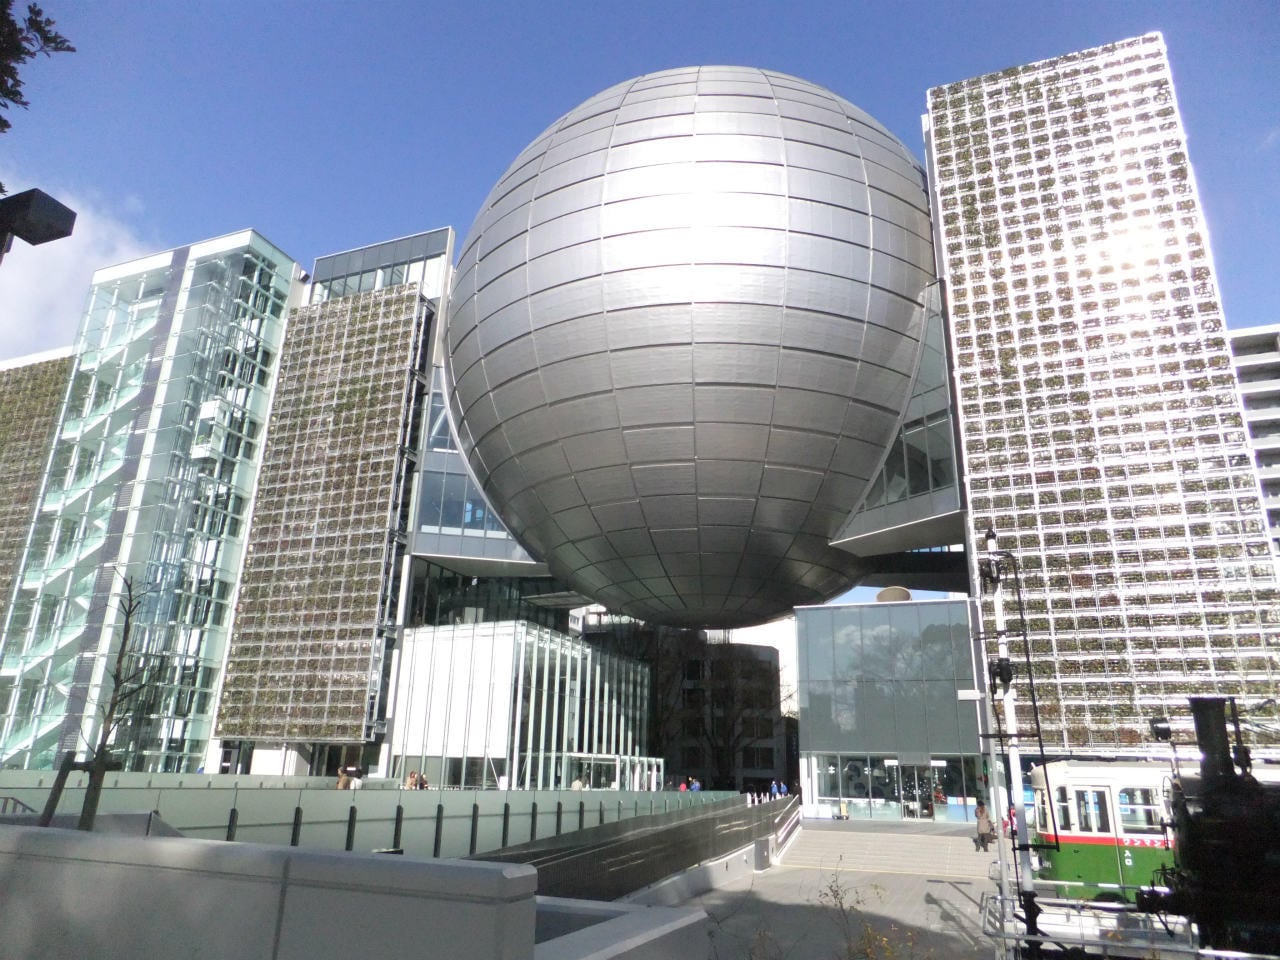 The planetarium is wonderful ☆ Nagoya City Science Museum